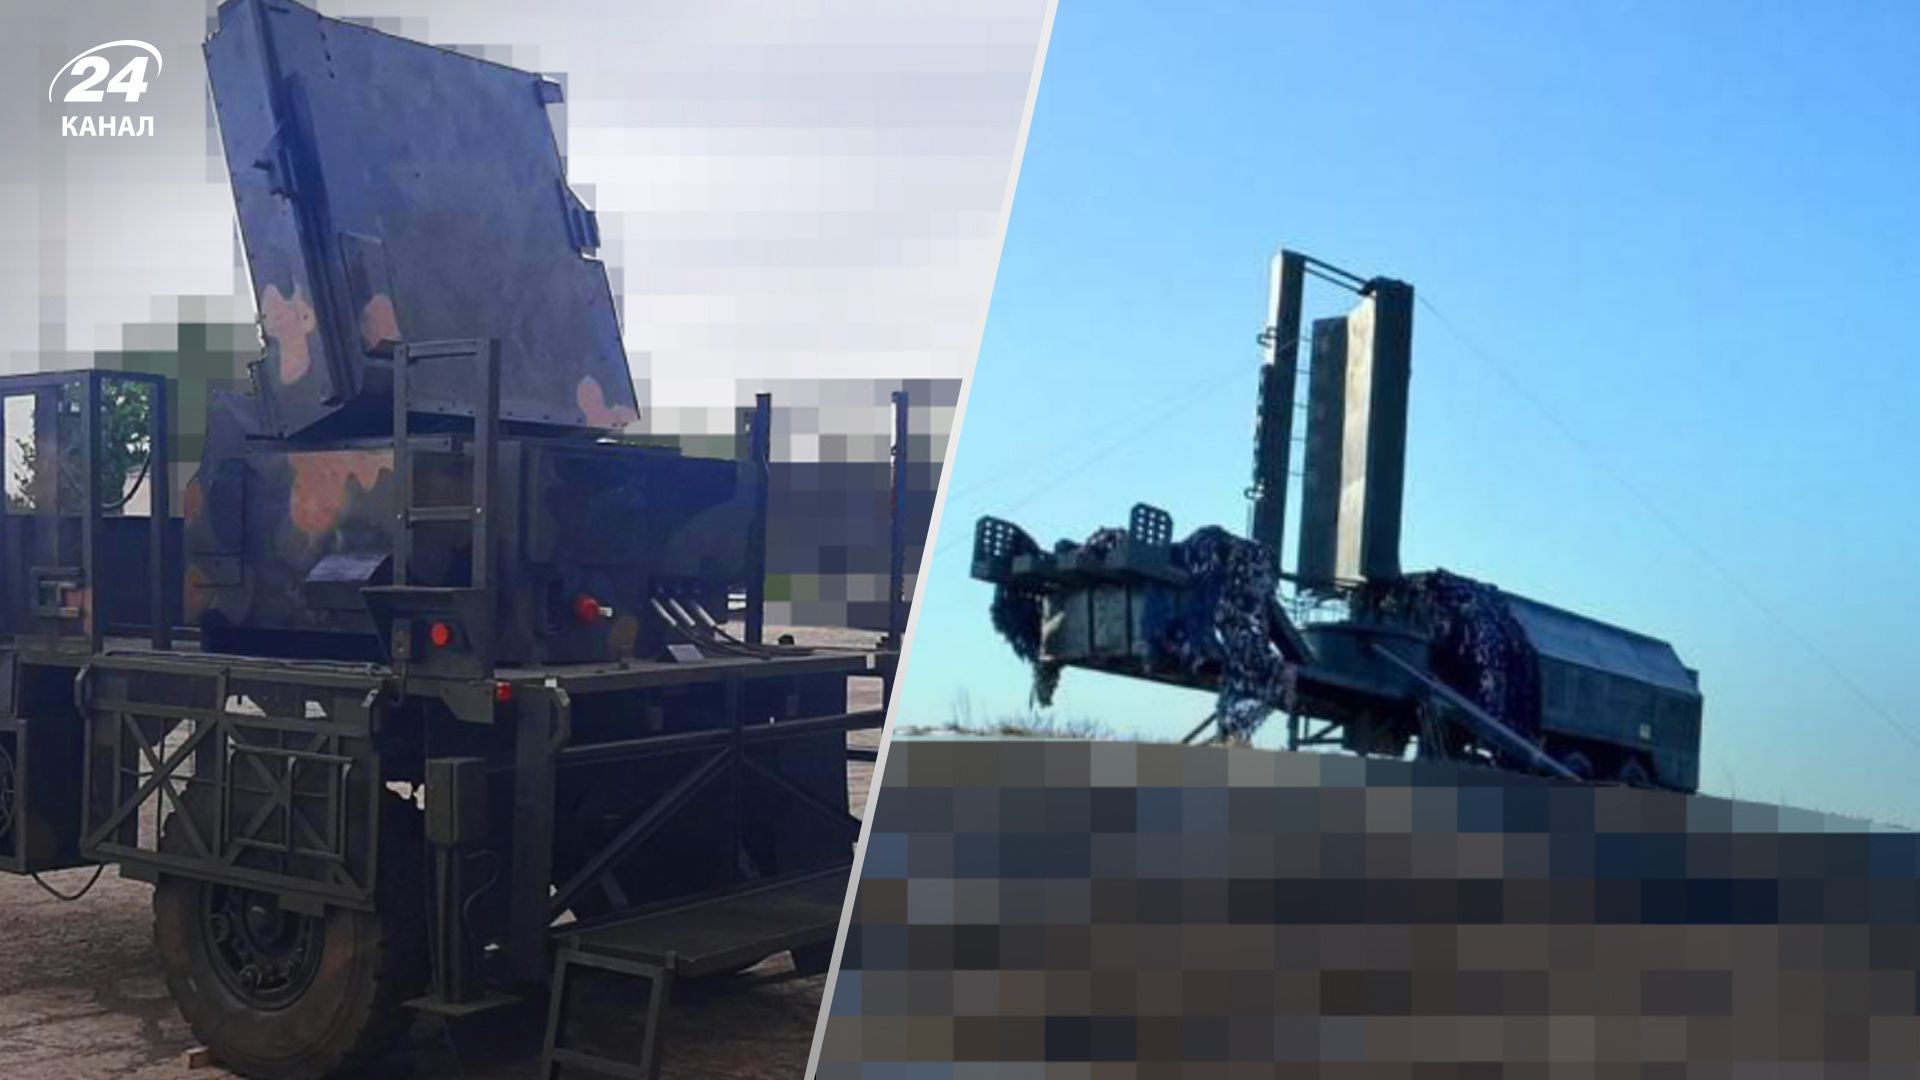 Артилерія і радари: Метінвест  запустив серійне виробництво макетів військової техніки для ЗСУ